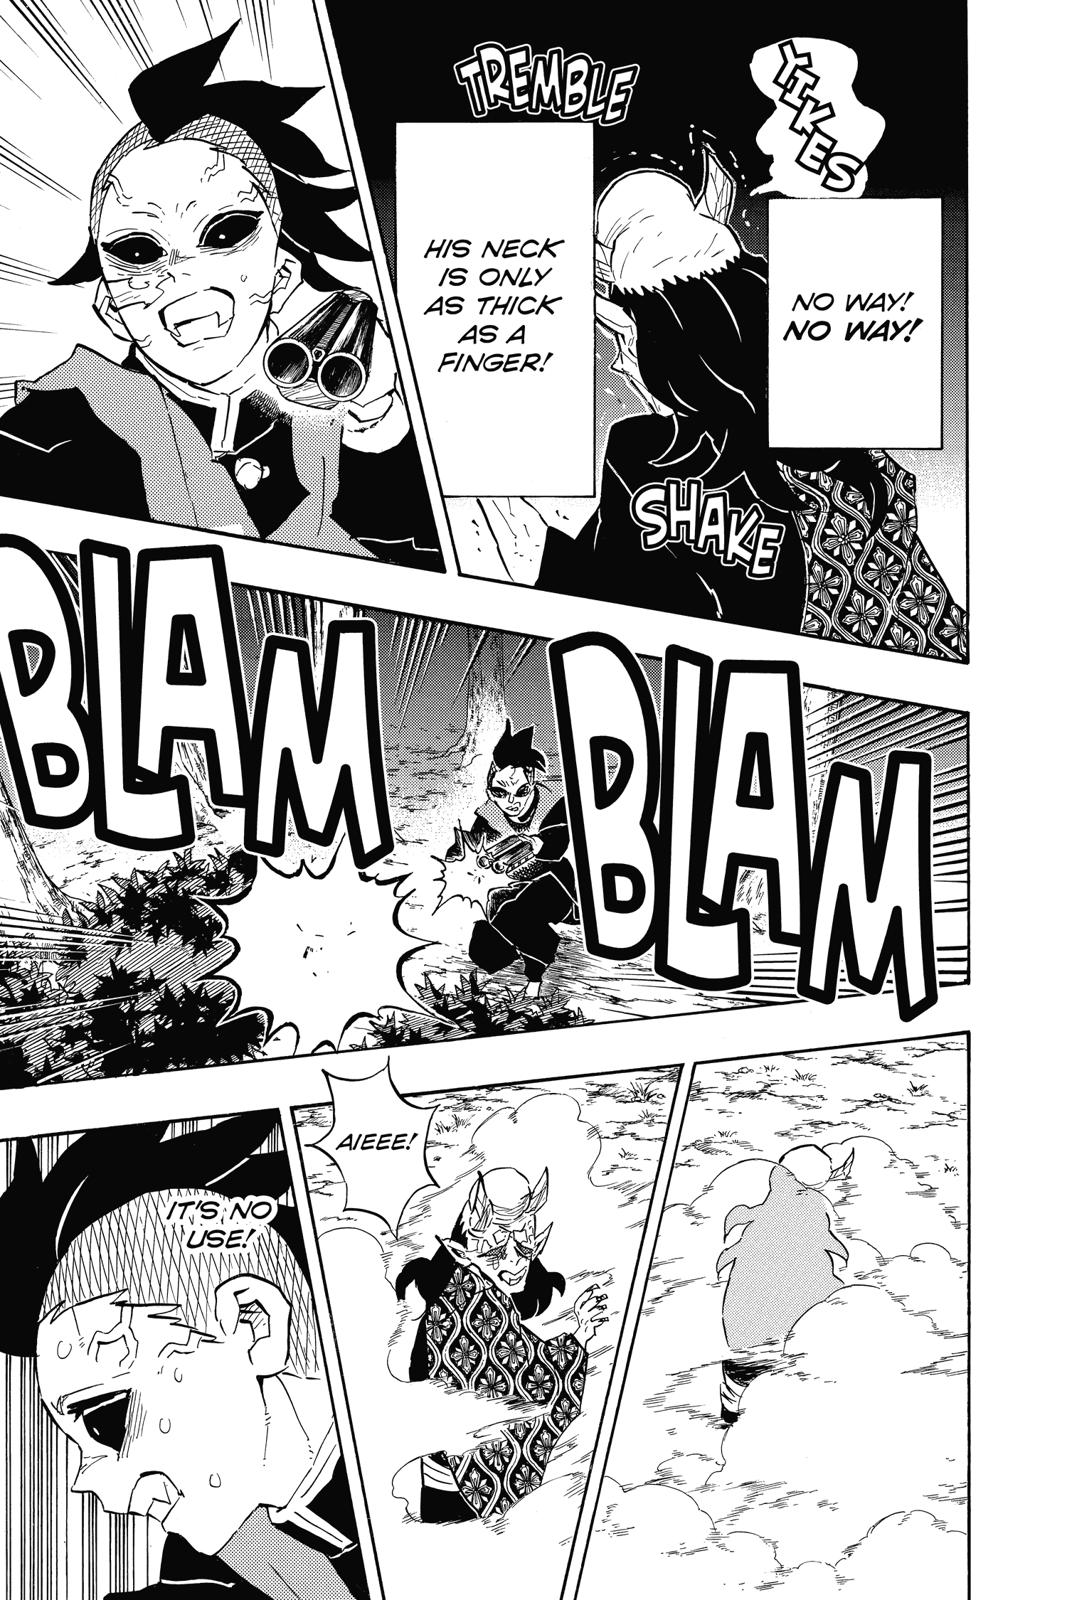 Demon Slayer Manga Manga Chapter - 114 - image 16